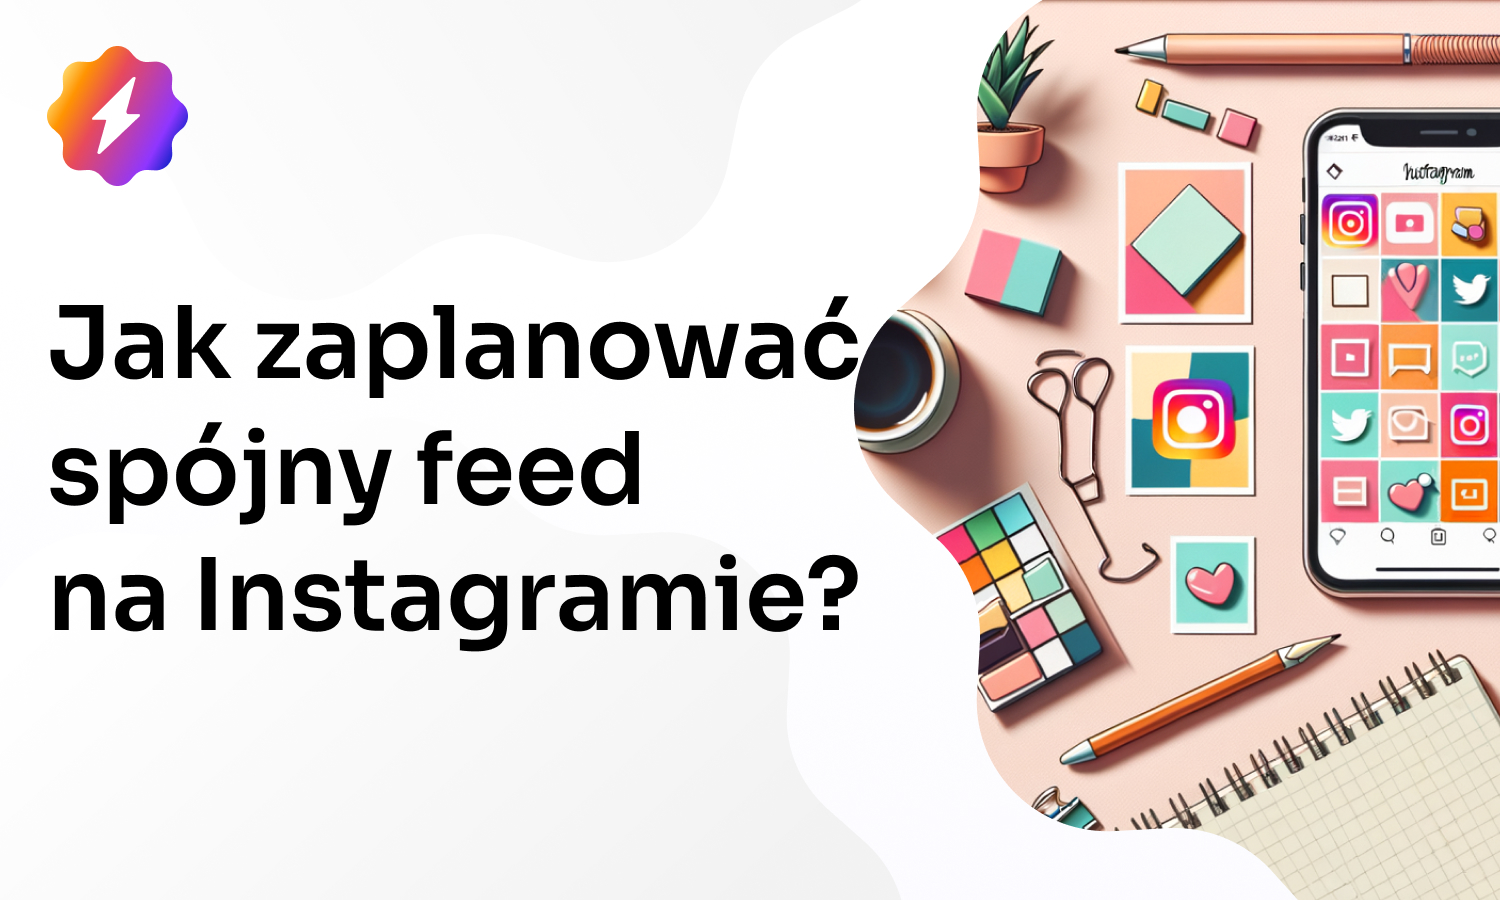 Instagram Feed – Jak zaplanować spójny feed na Instagramie?